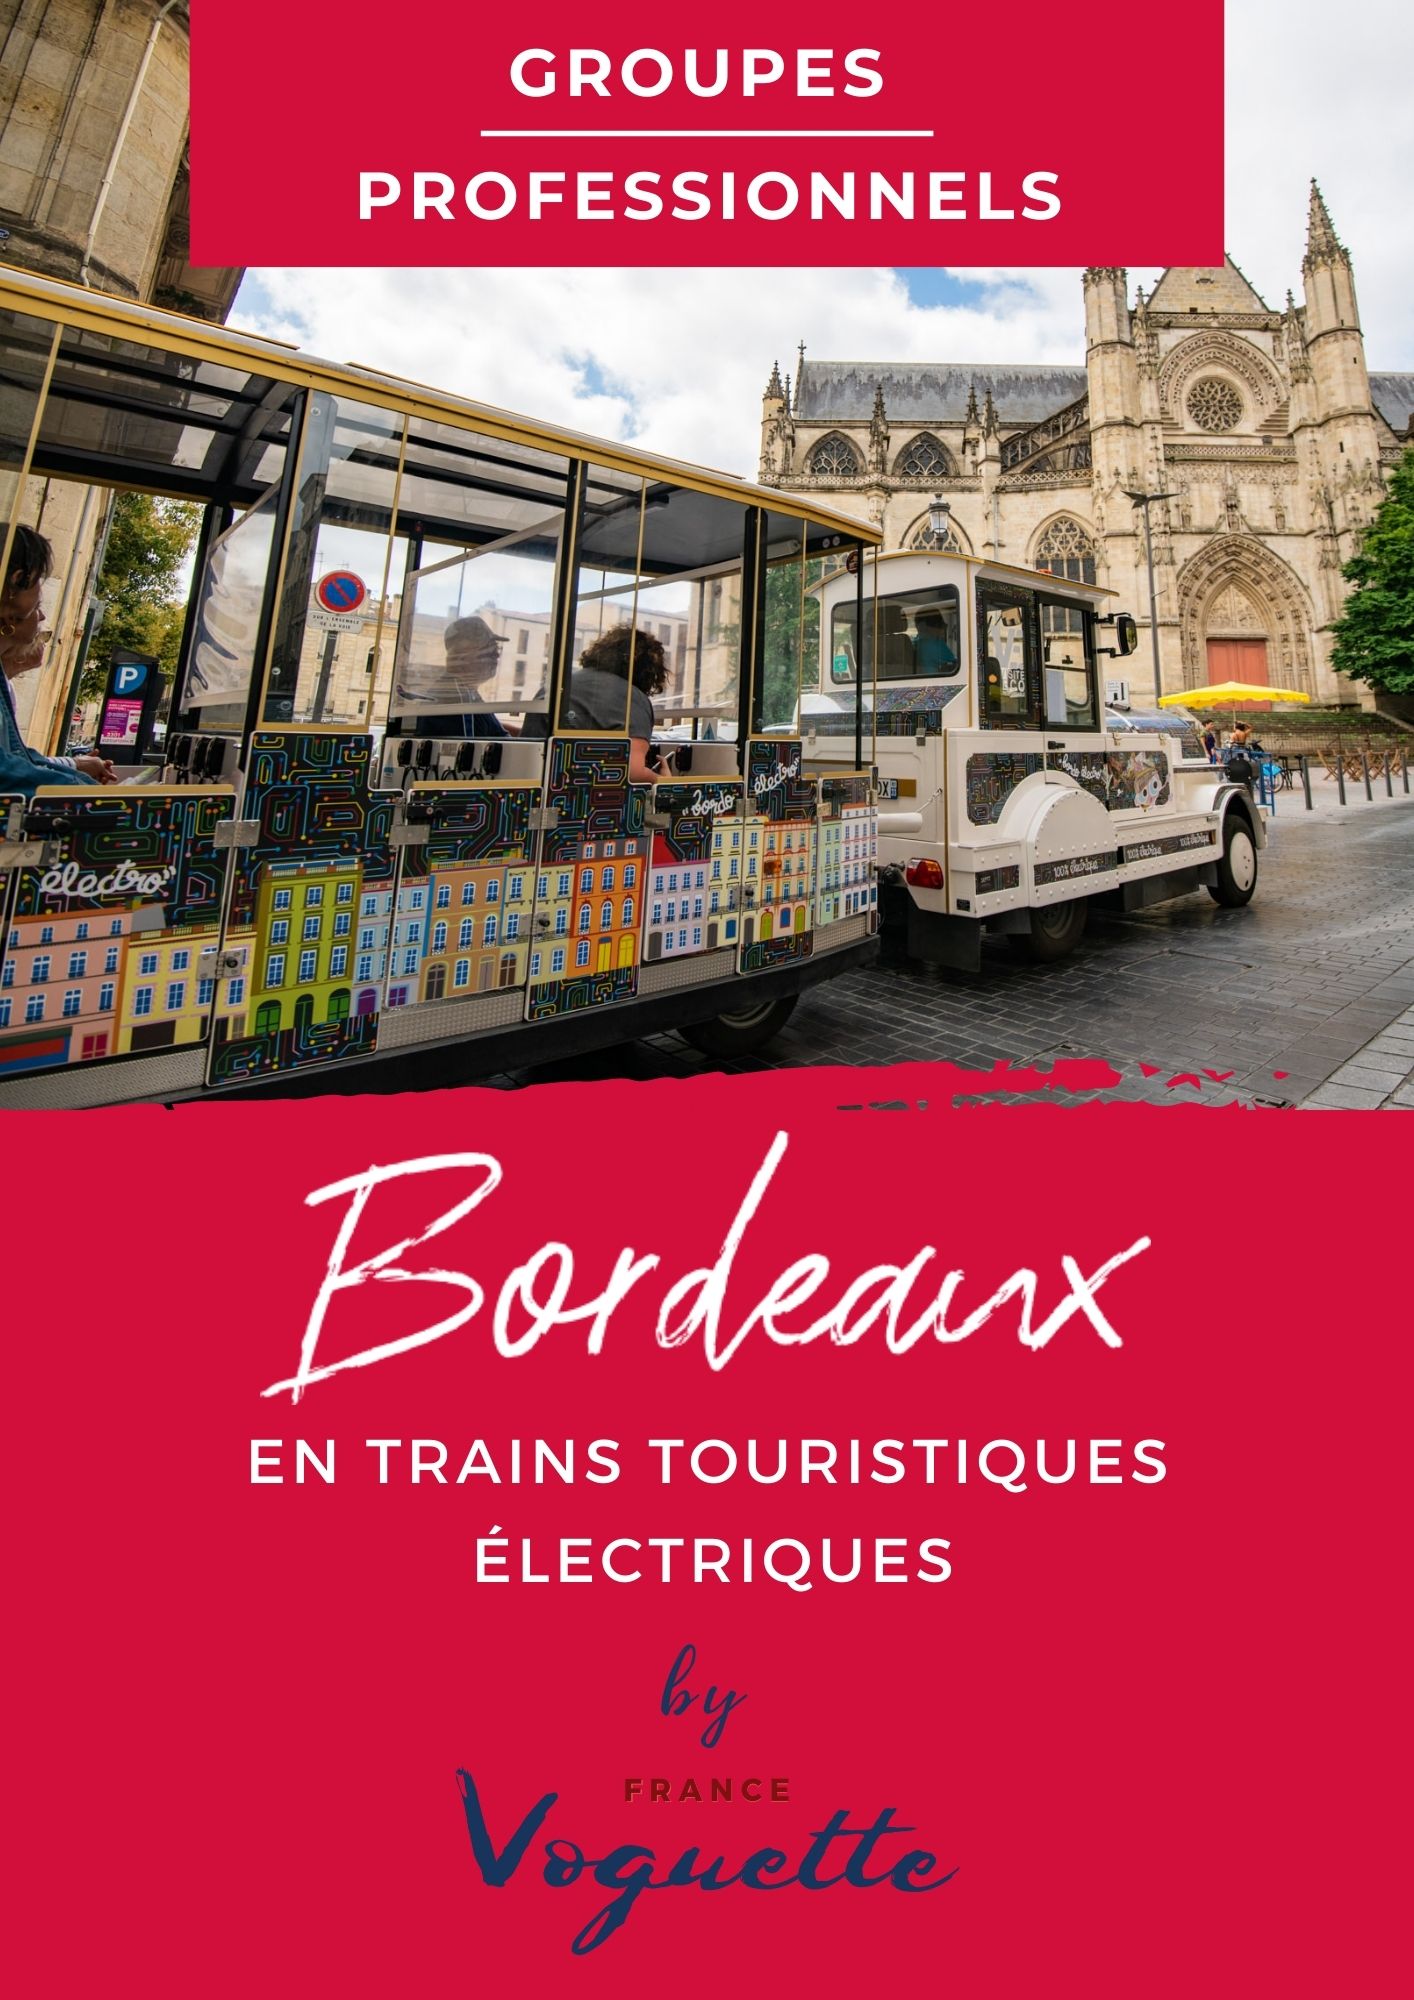 Le Petit Train de Bordeaux, City of Bordeaux